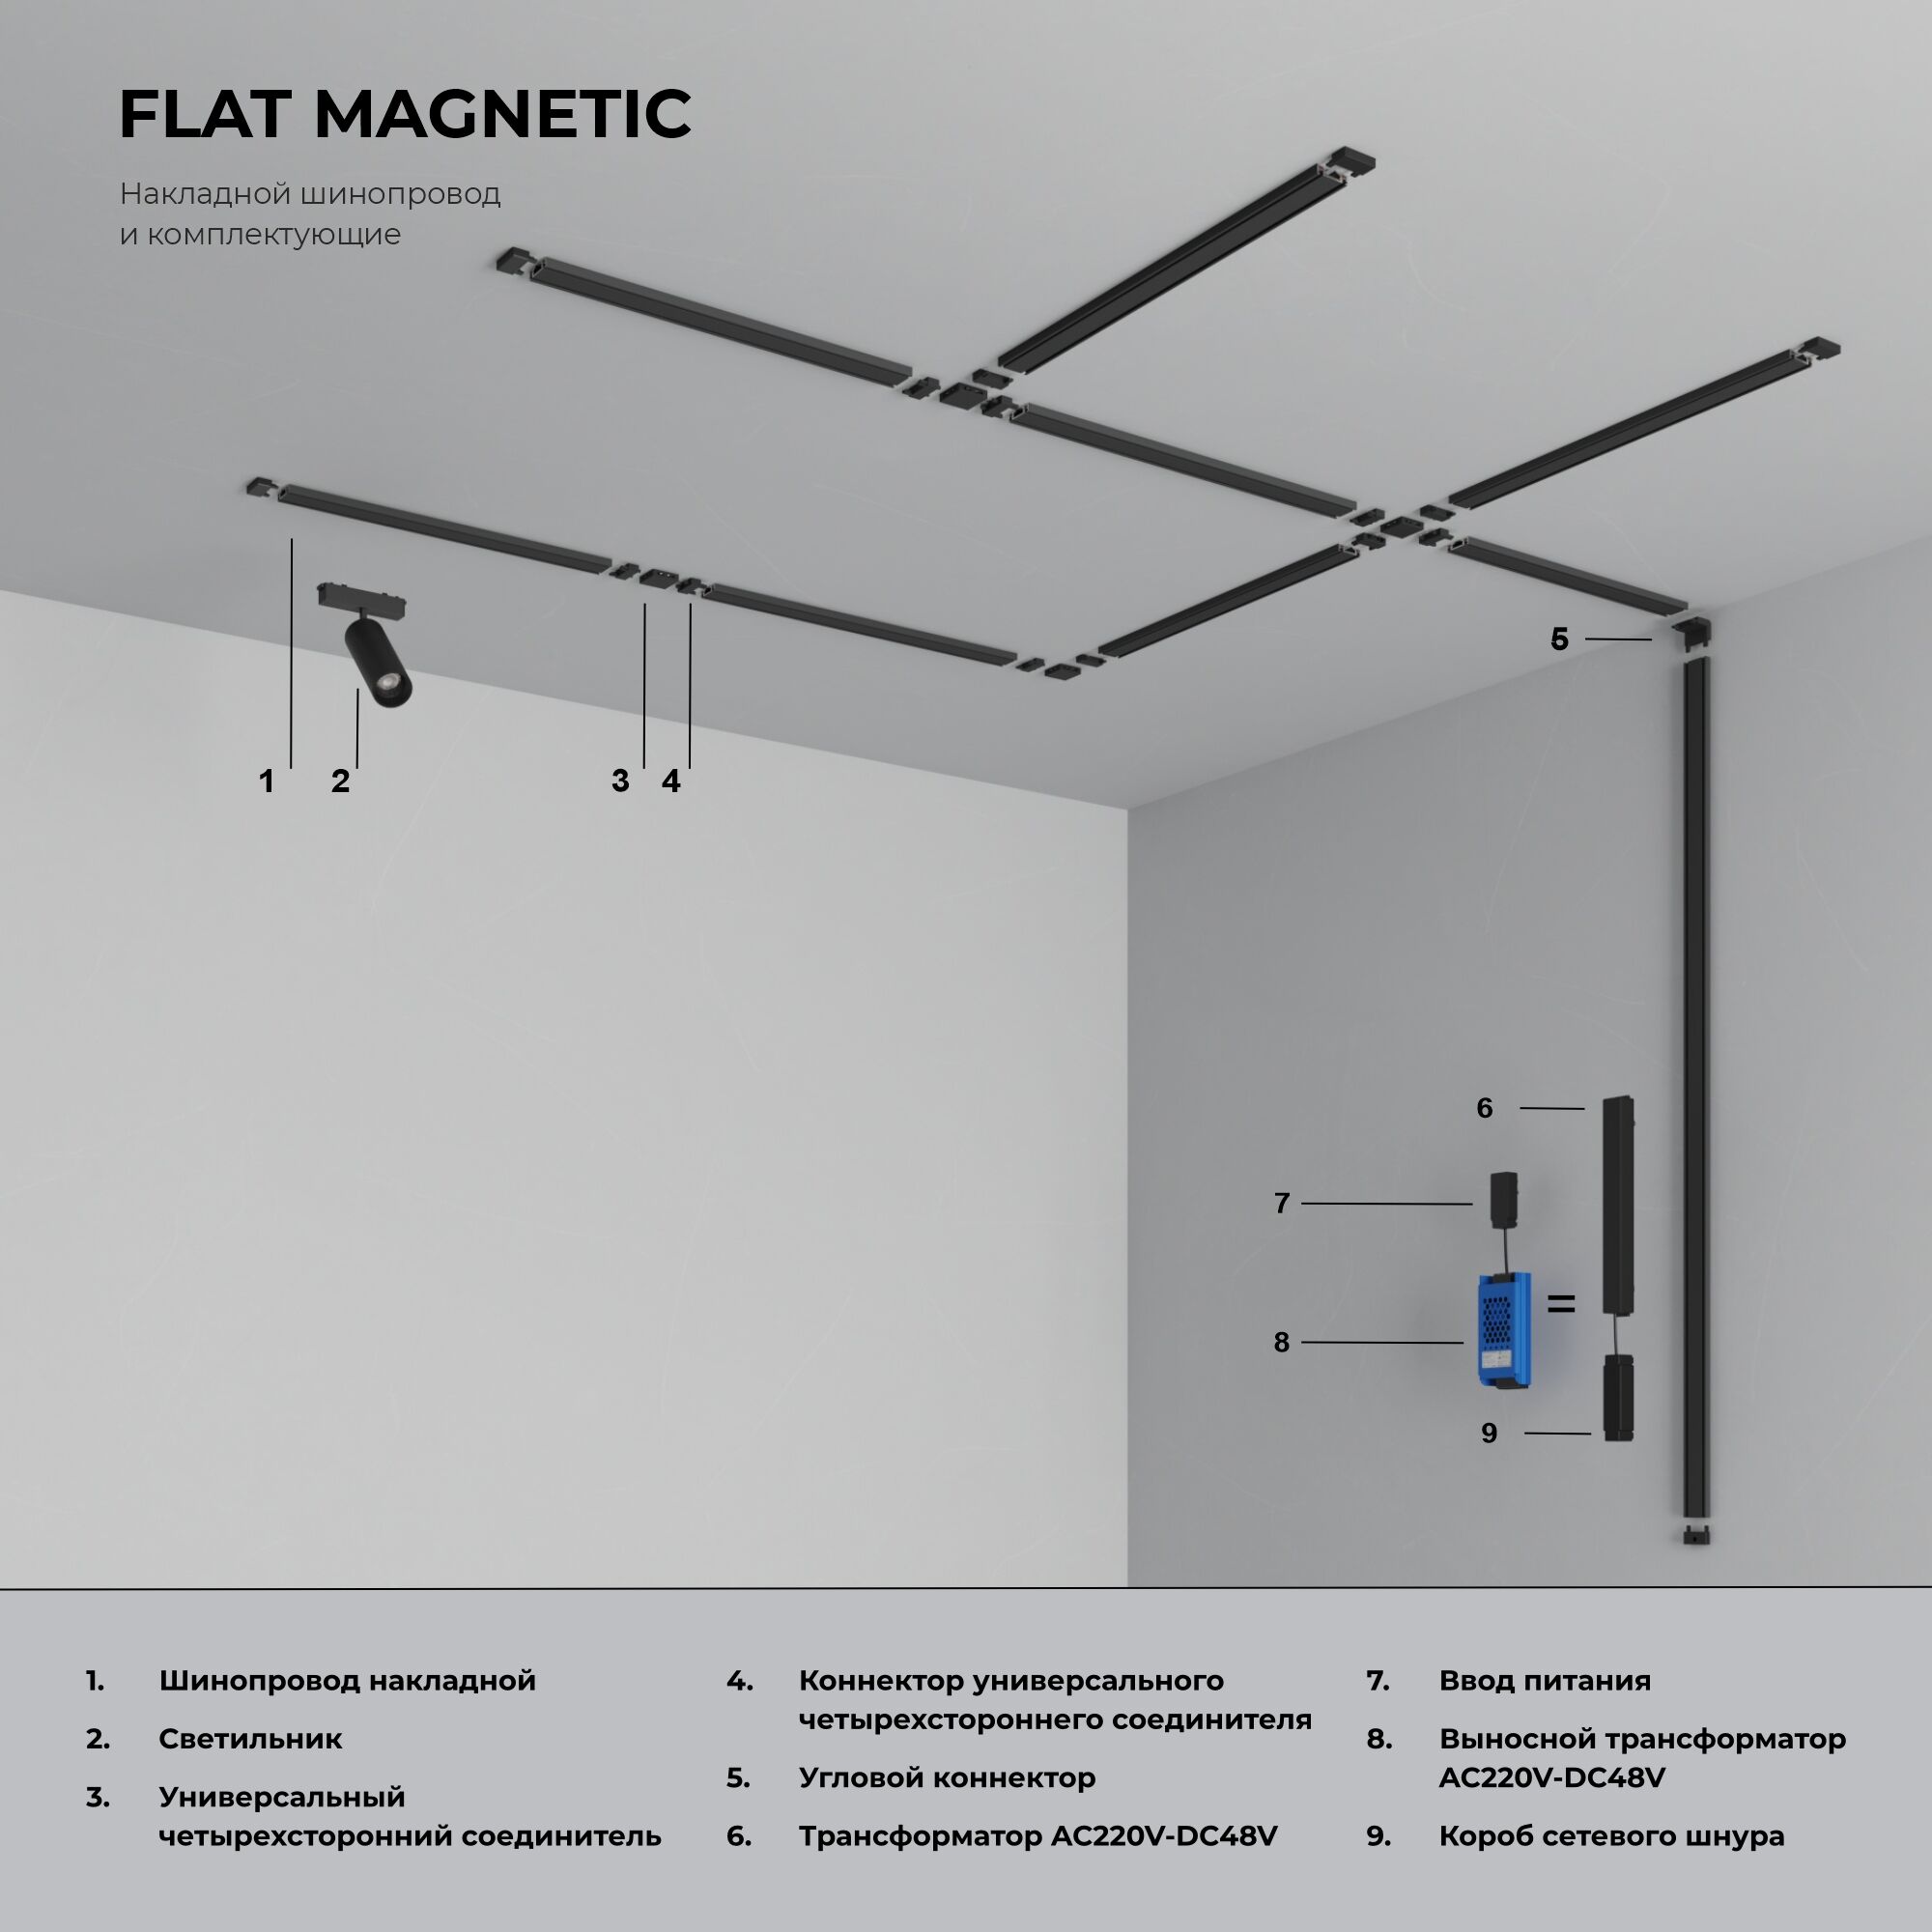 Flat Magnetic Коннектор для четырёхстороннего соединителя накладного шинопровода чёрный 85004/00